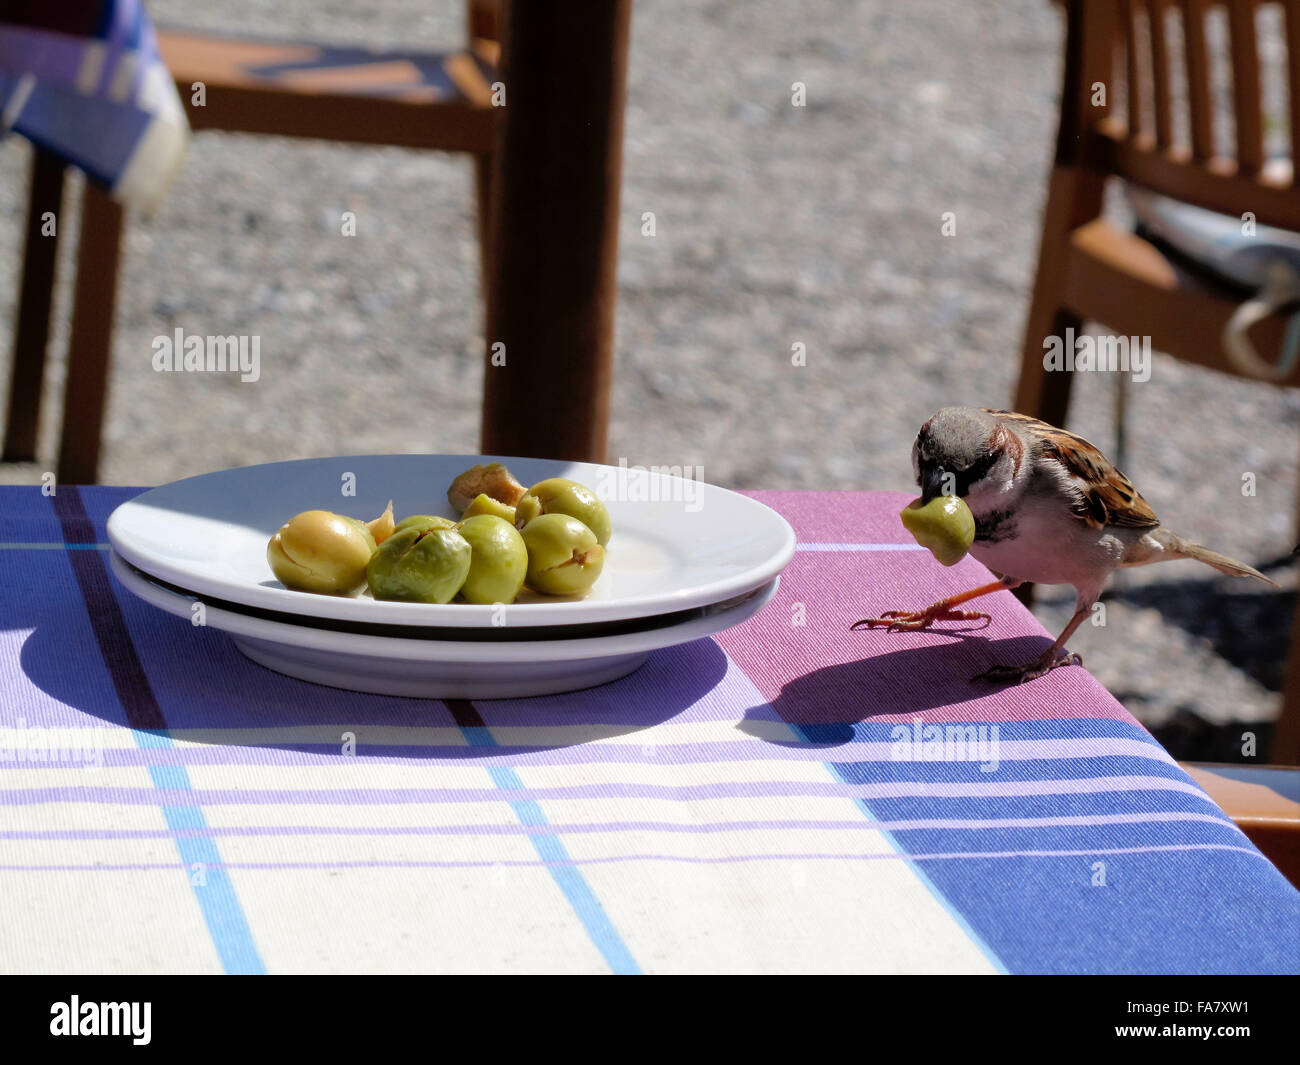 Vol d'un moineau commun dans une assiette d'olive Banque D'Images